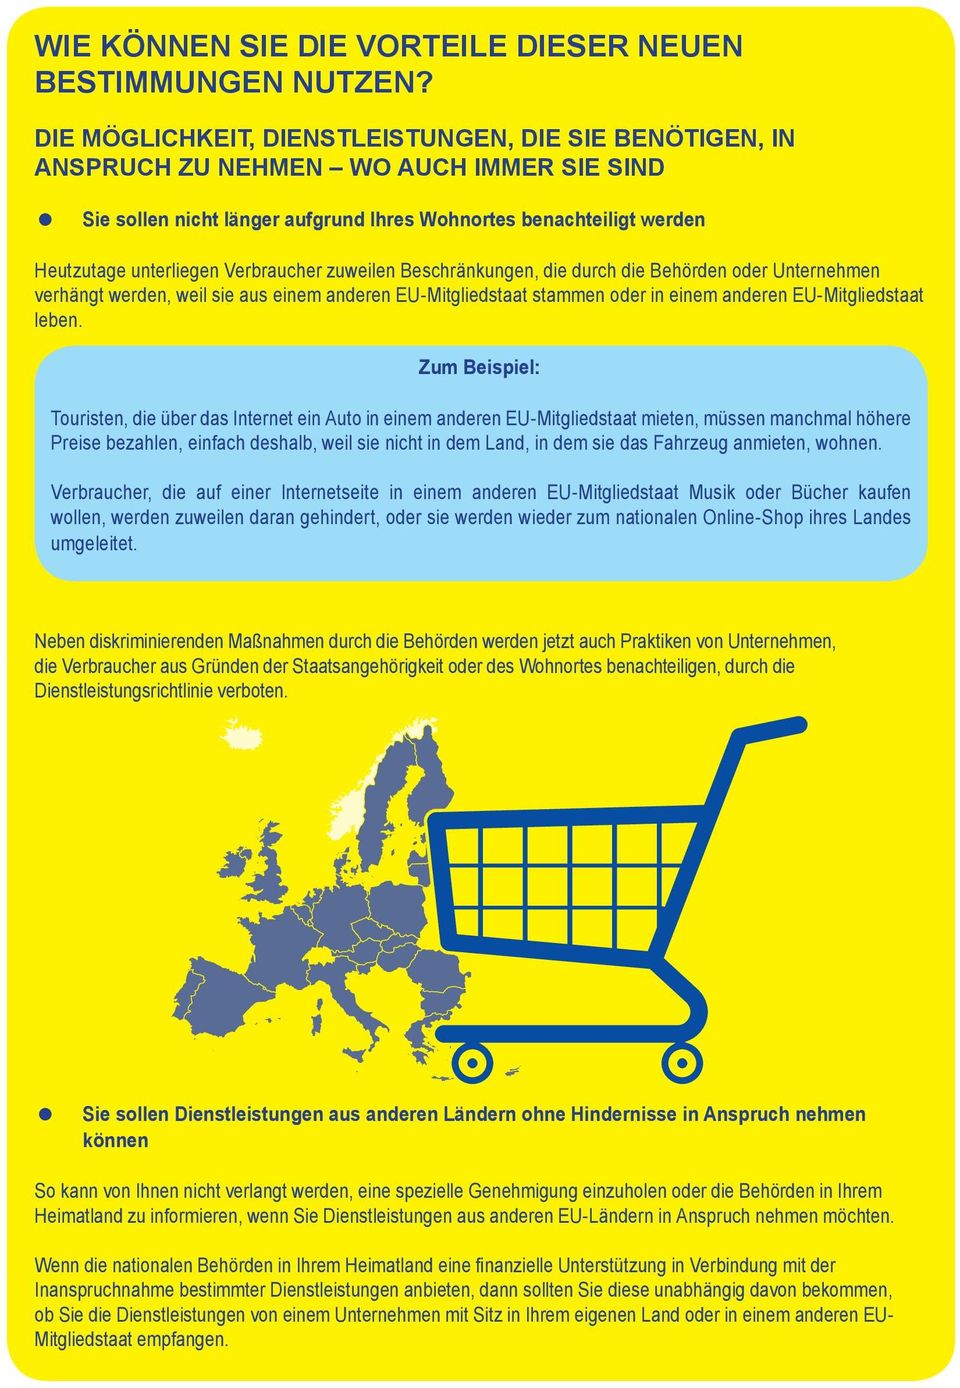 Verbraucher zuweilen Beschränkungen, die durch die Behörden der Unternehmen verhängt werden, weil sie aus einem anderen EU-Mitgliedstaat stammen der in einem anderen EU-Mitgliedstaat leben.